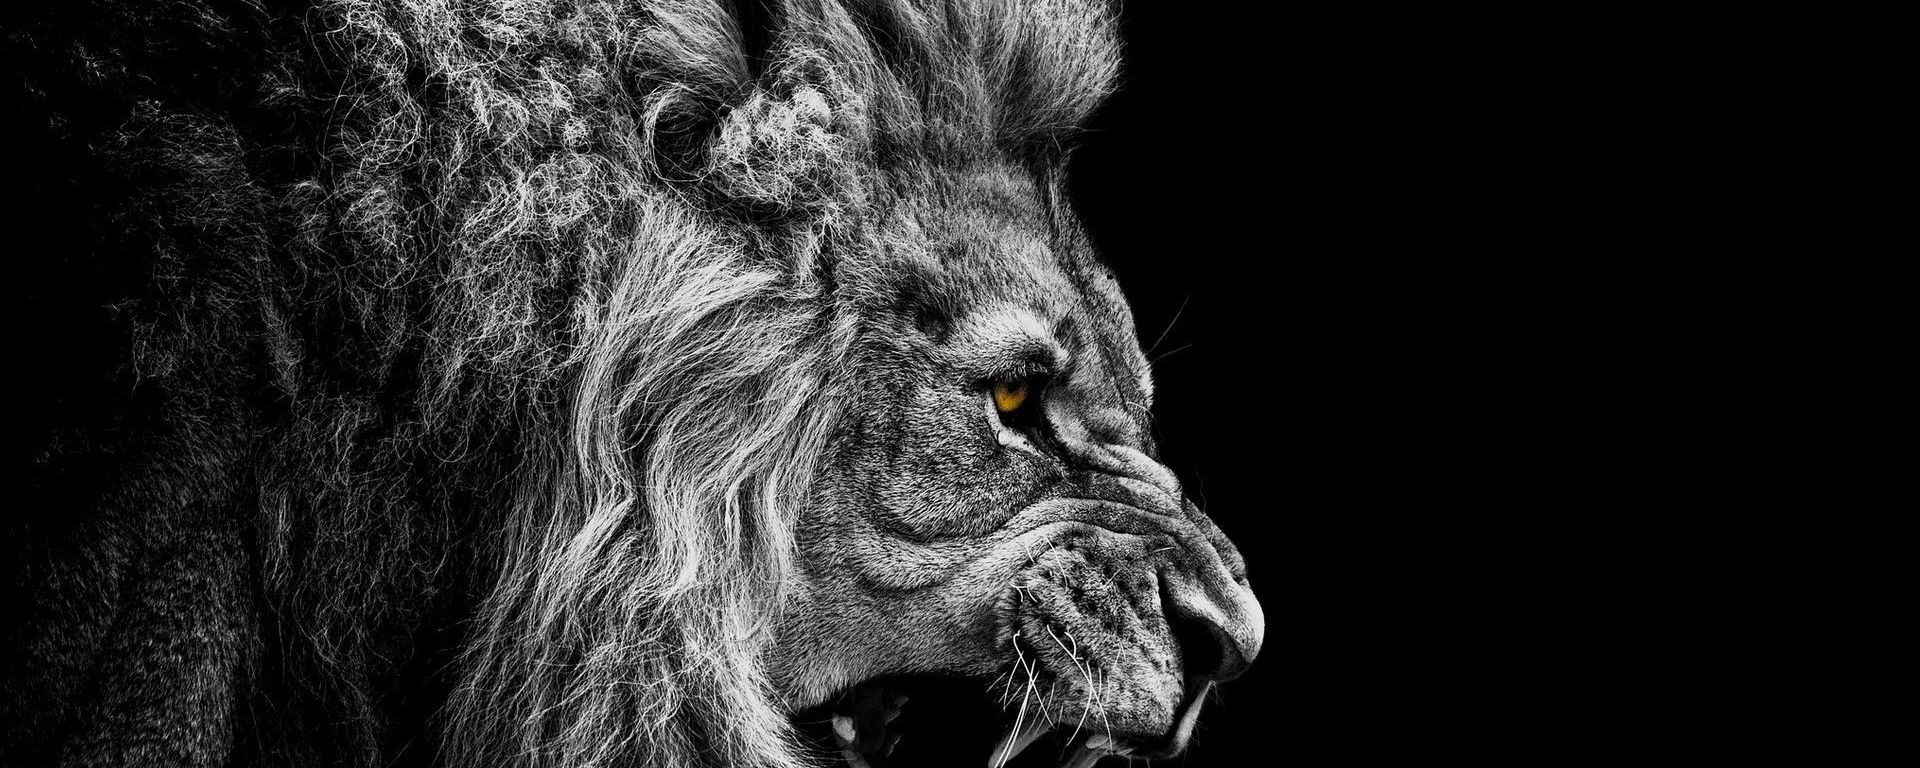 Foto de perfil de un león.